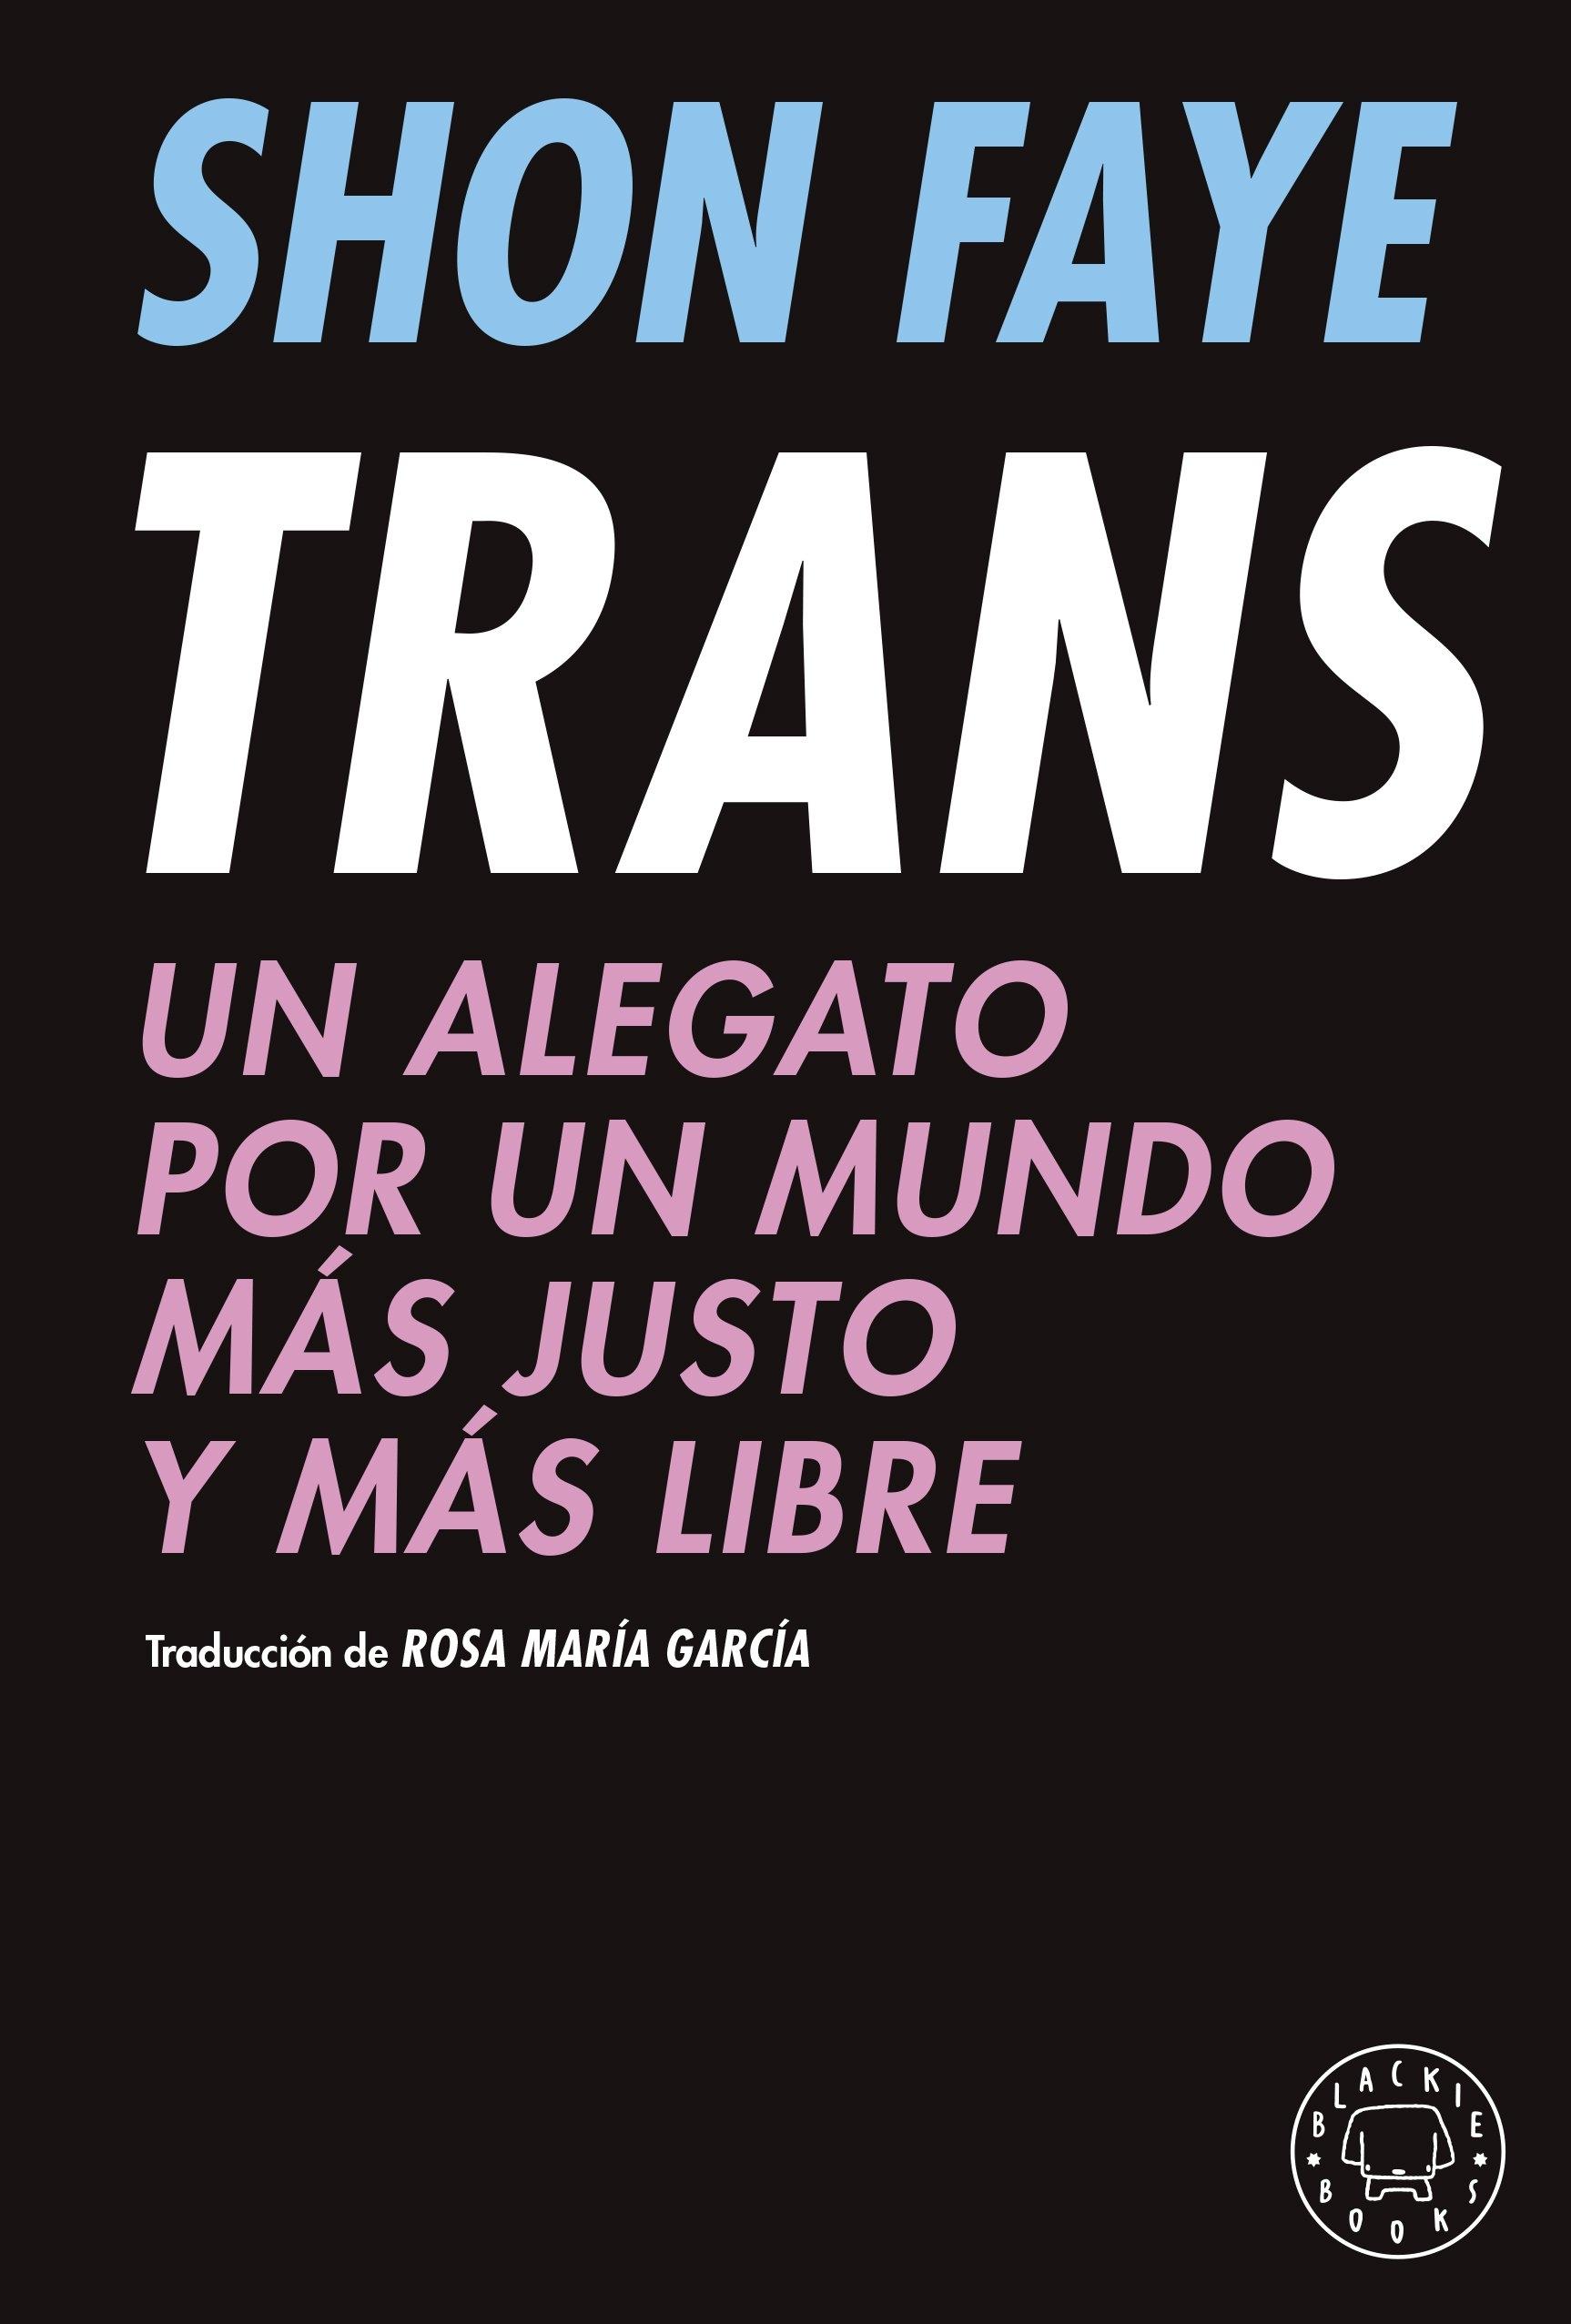 Trans "Un Alegato por un Mundo Más Justo y Más Libre"